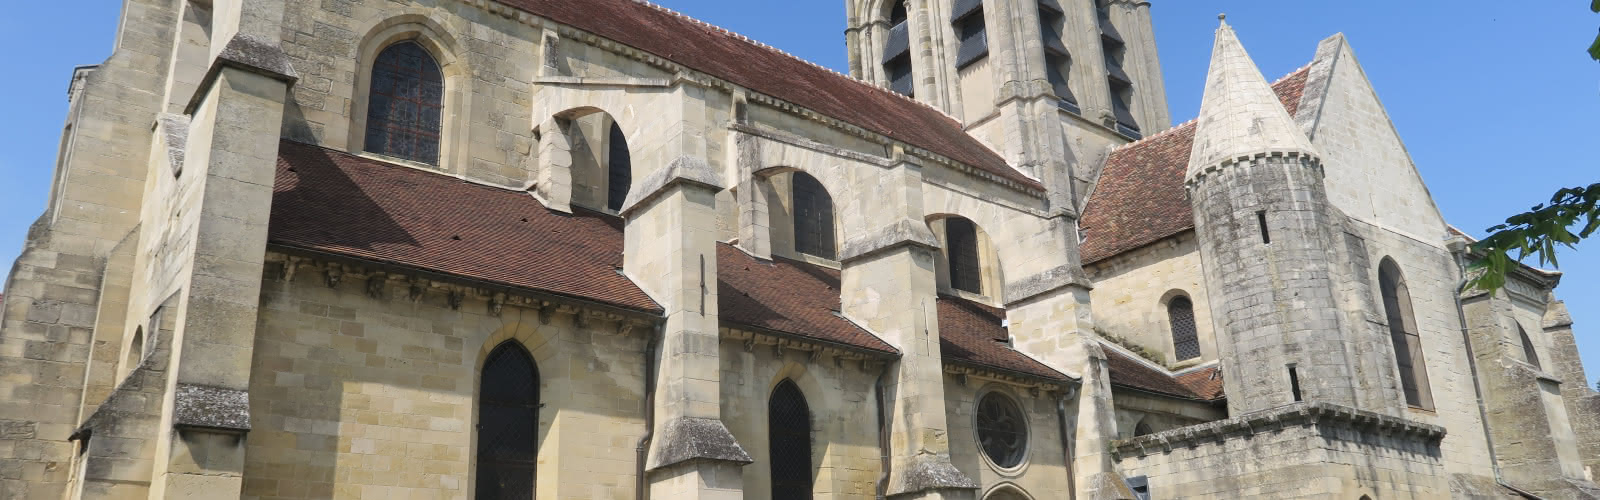 Eglise d'Auvers-sur-Oise